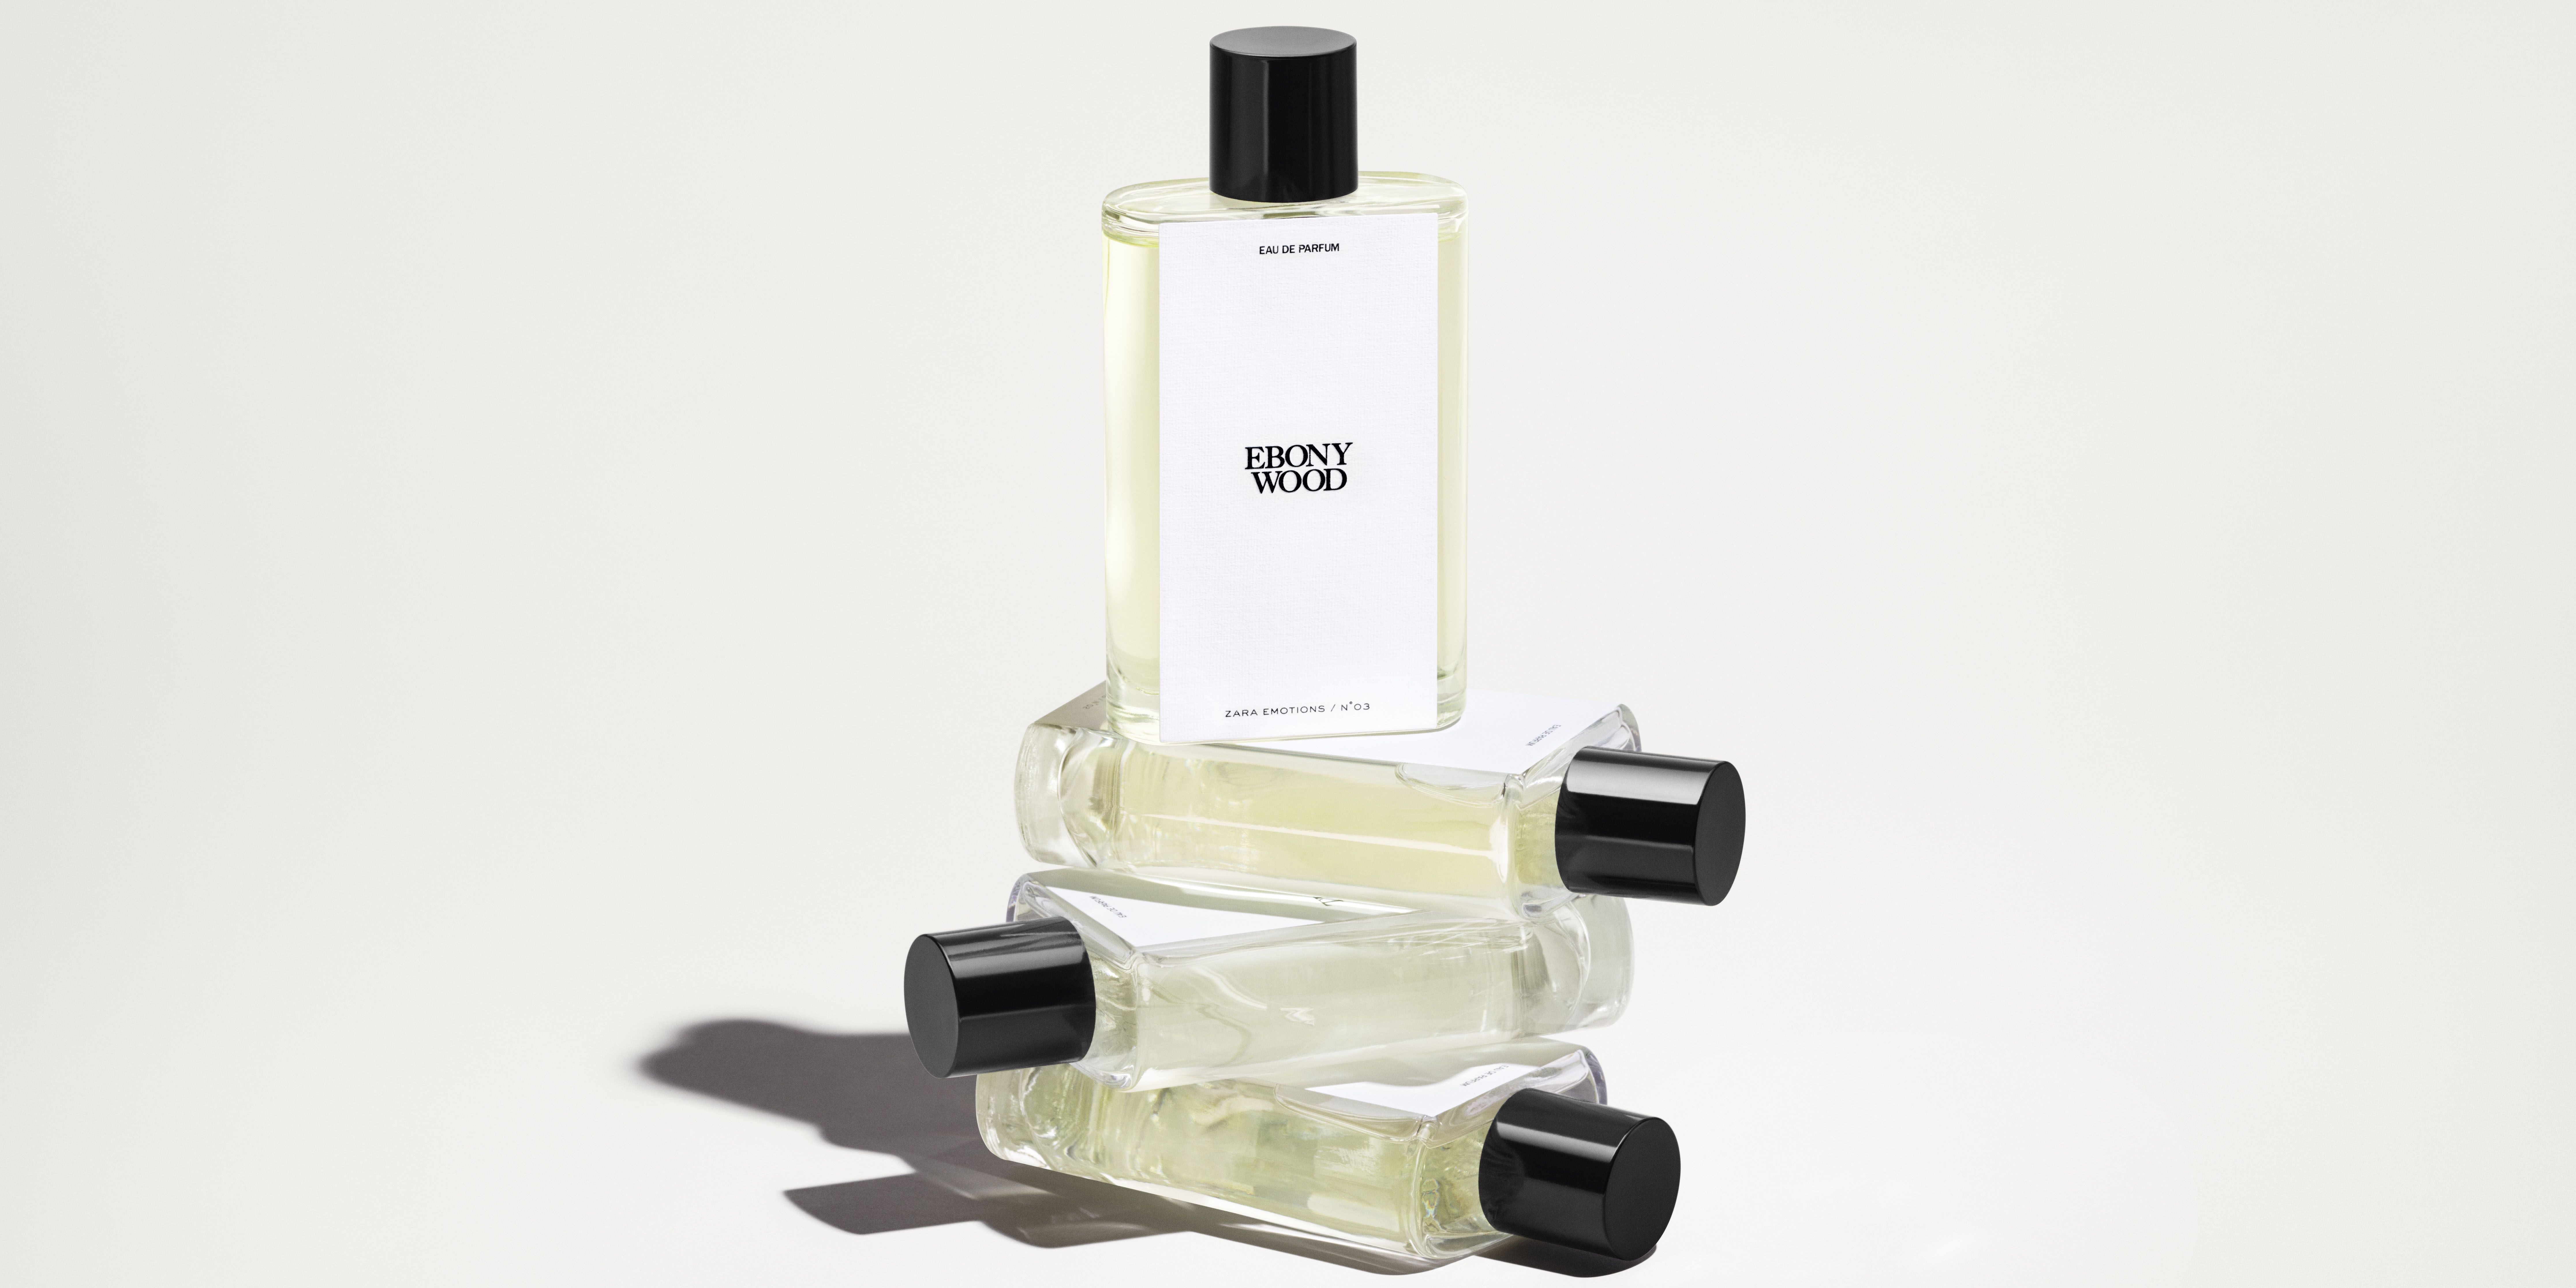 Vetiver Pamplemousse Zara perfume - a fragrance for women and men 2019